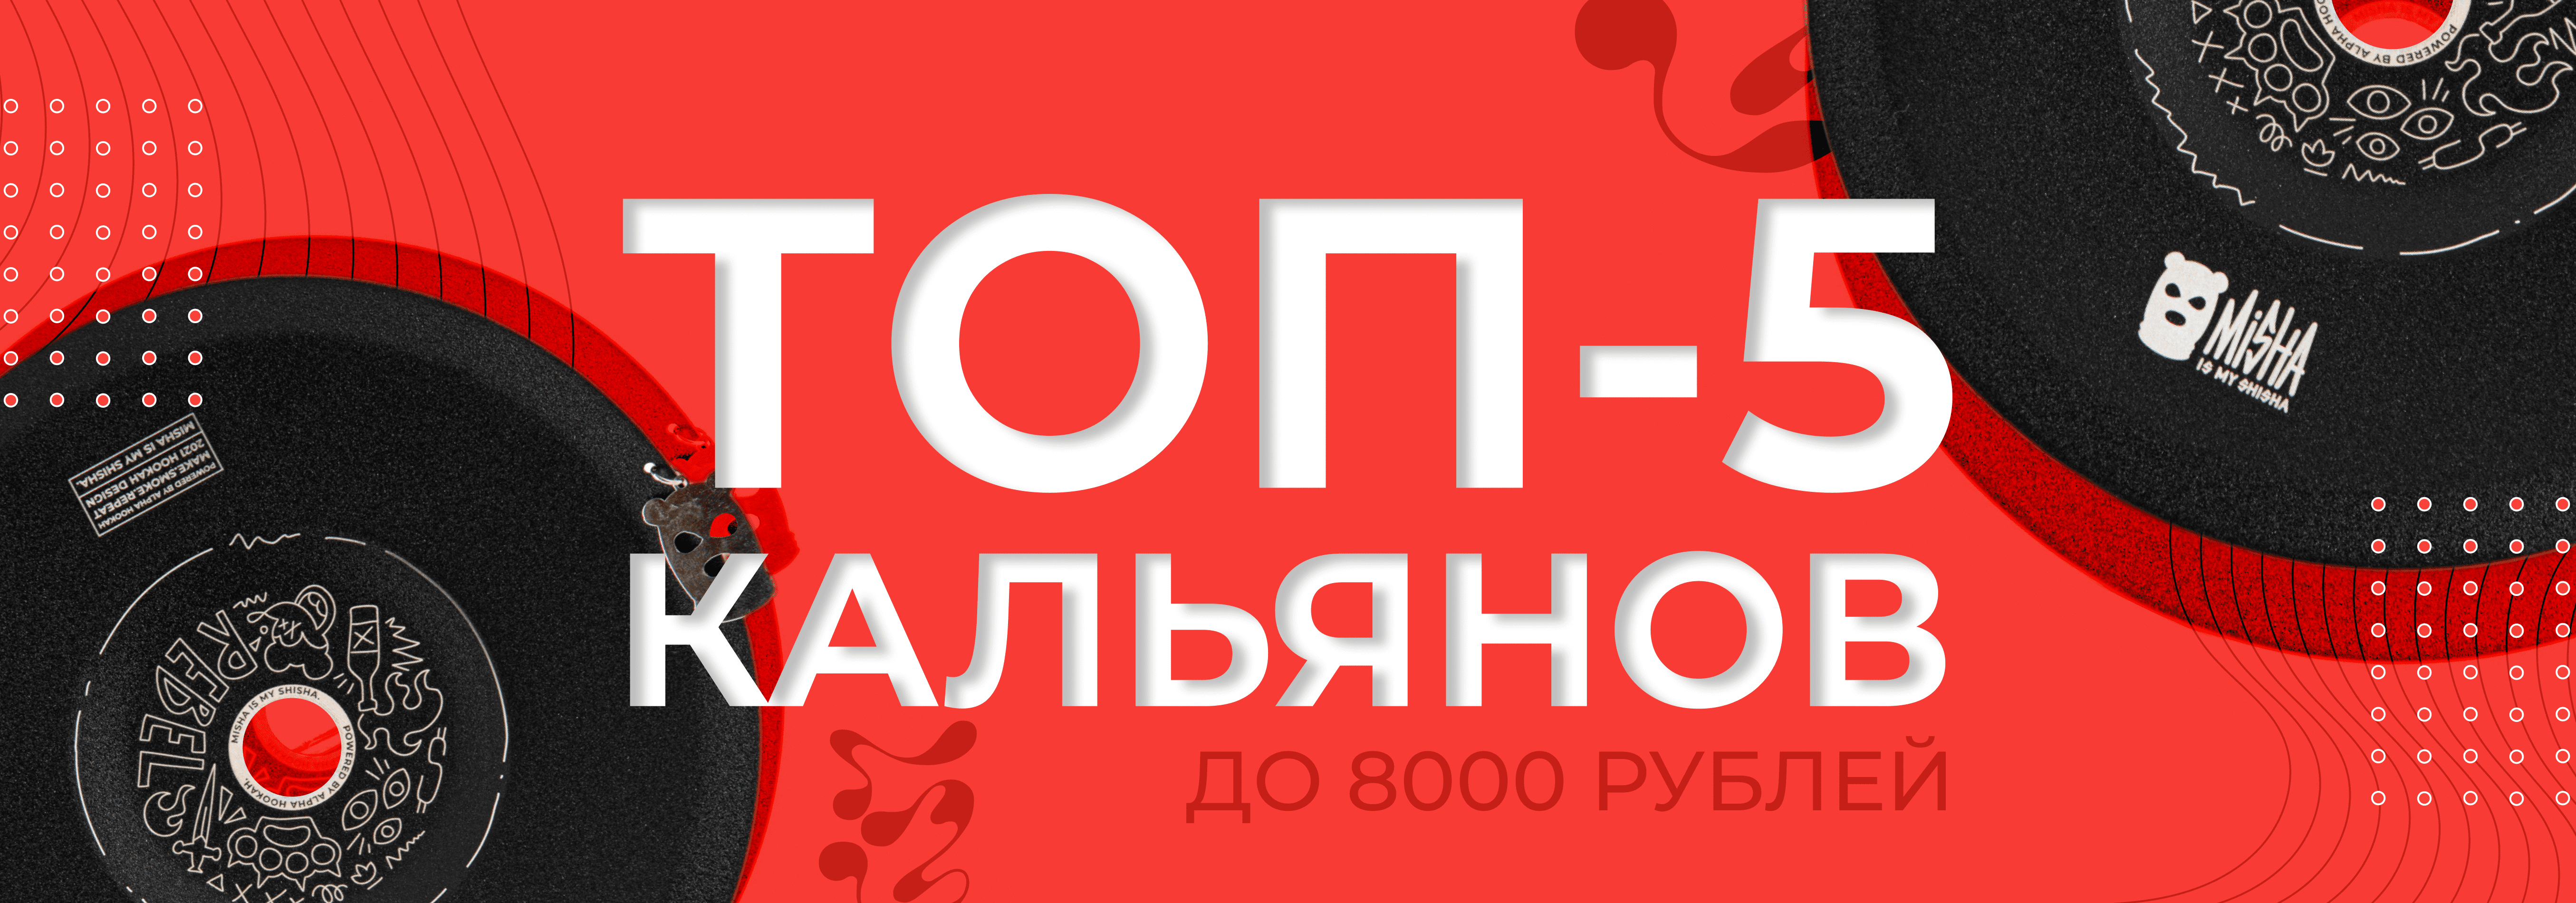 ТОП-5 КАЛЬЯНОВ ДО 8000 РУБЛЕЙ